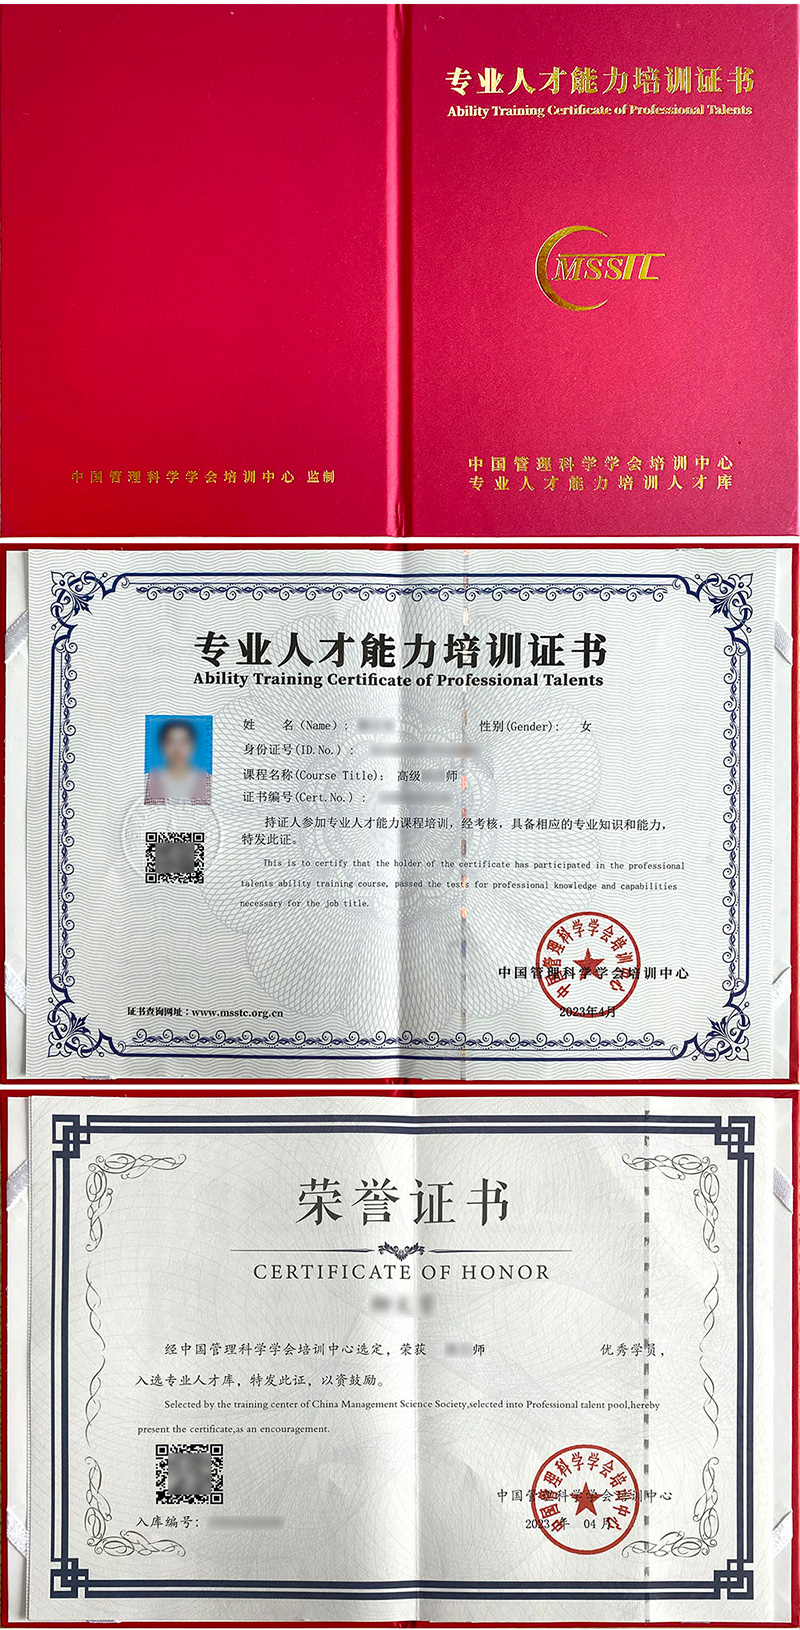 中国管理科学学会培训中心 专业人才能力培训证书 经验萃取师证证书样本